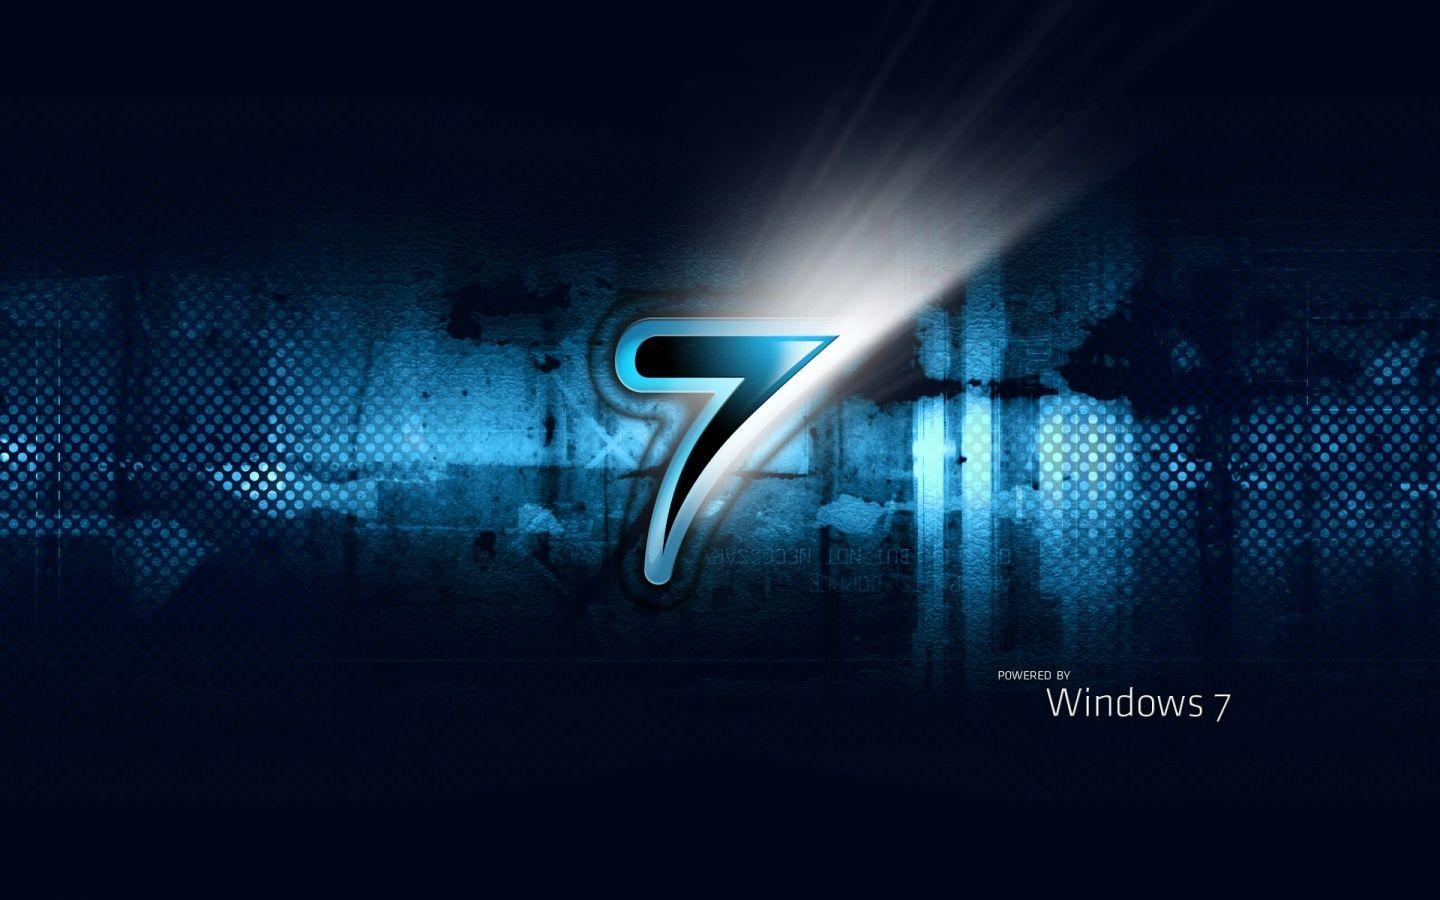 windows 7 HD desktop wallpaper wallpaper at GetHDPic.com